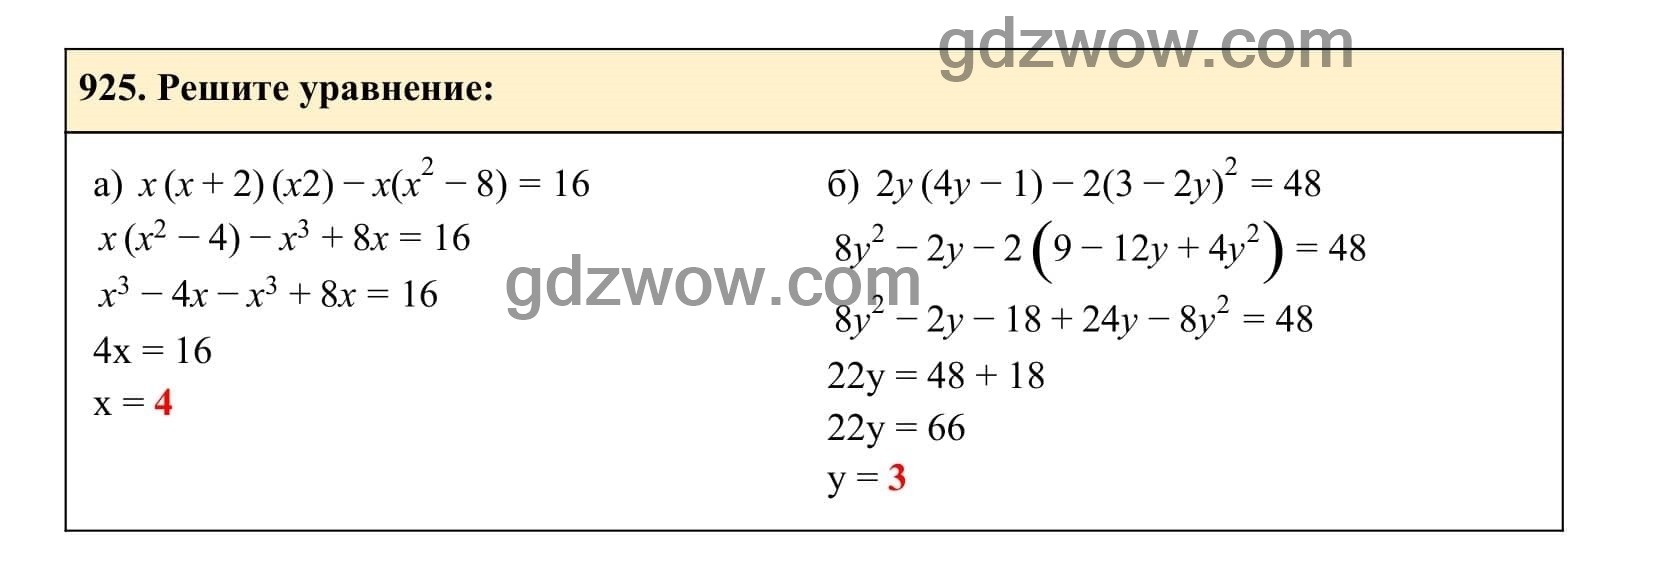 Упражнение 925 - ГДЗ по Алгебре 7 класс Учебник Макарычев (решебник) - GDZwow